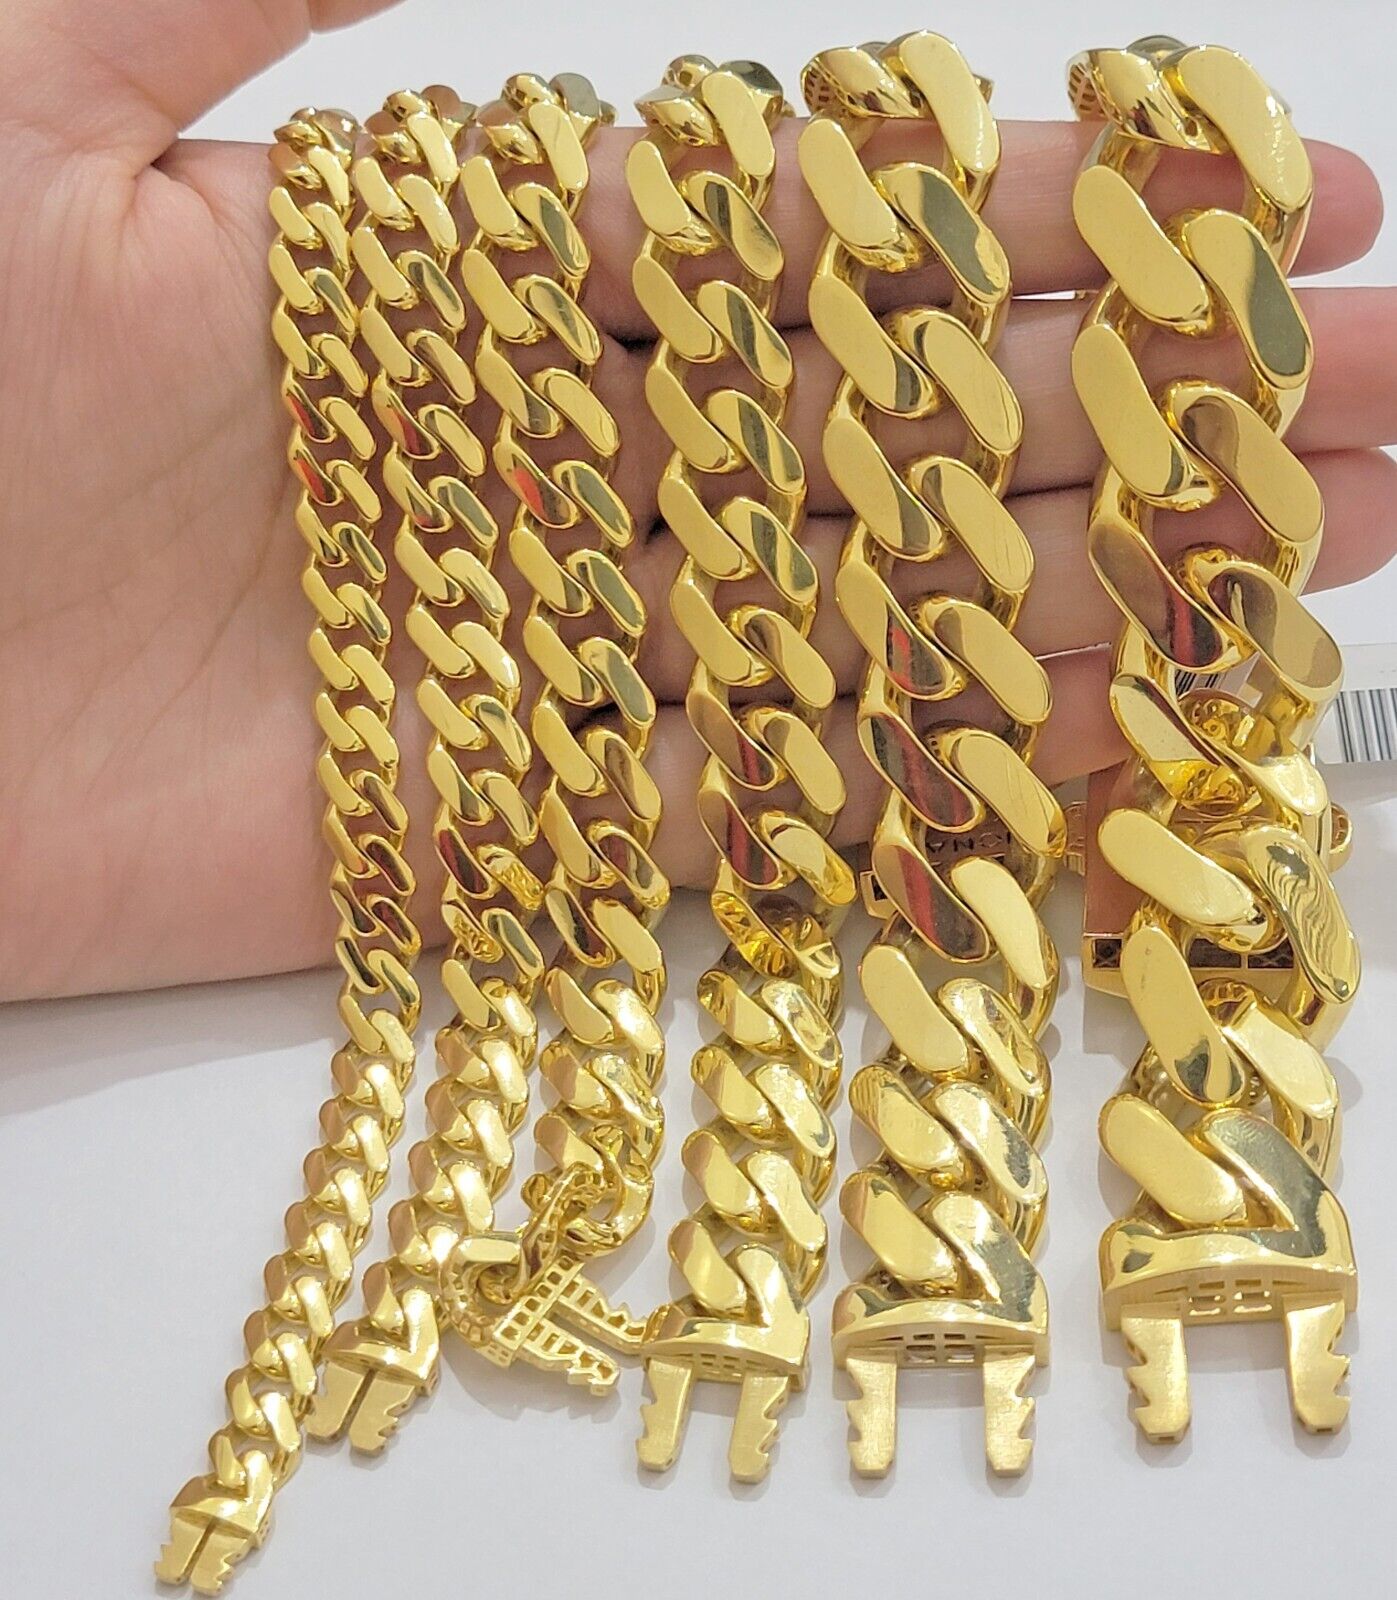 10K Yellow Gold Monaco Chain Bracelet 8mm Diamond Cut 8.5  Long